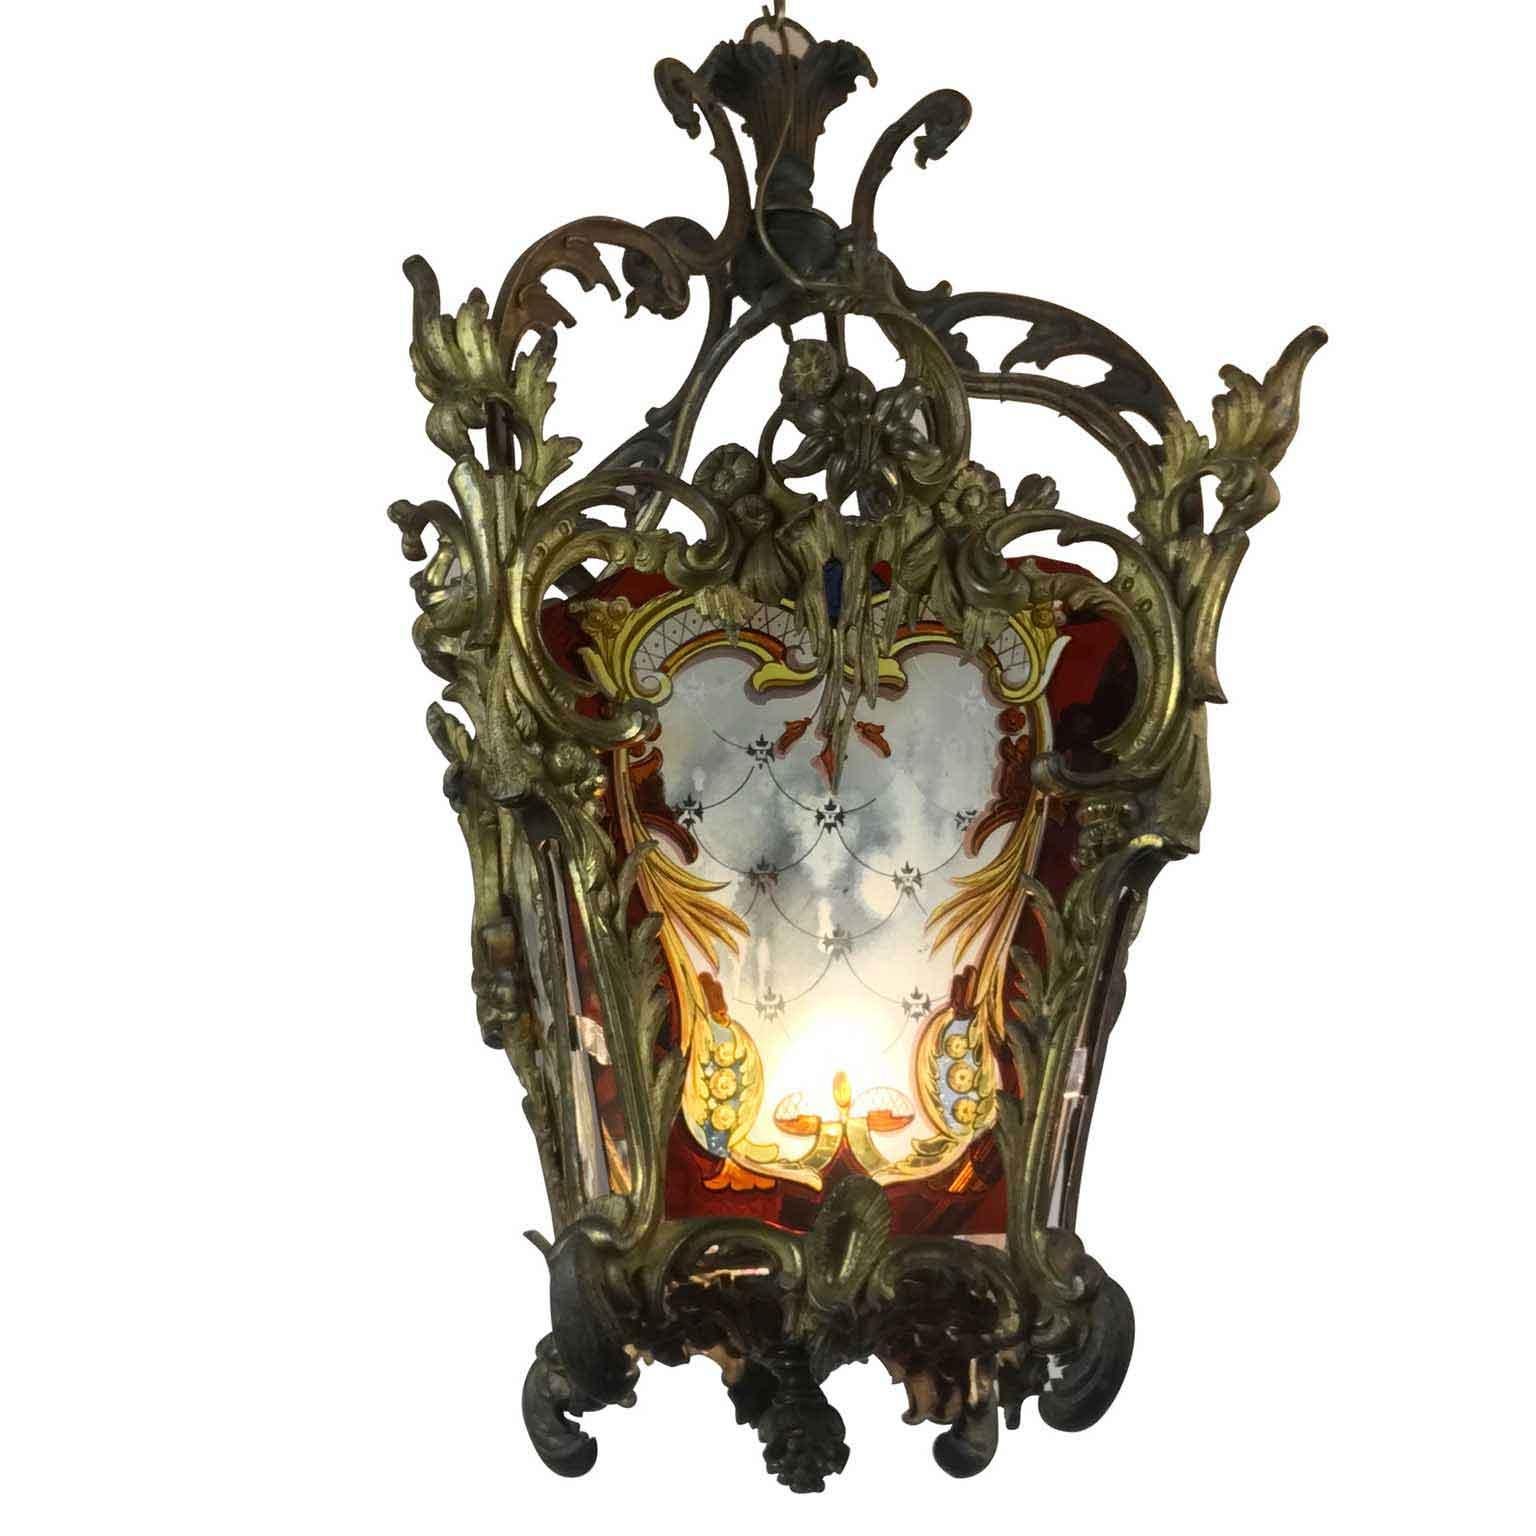 Rococo 19th Century Italian Gilt Bronze Lantern with Lambrequin Decorated Glasses